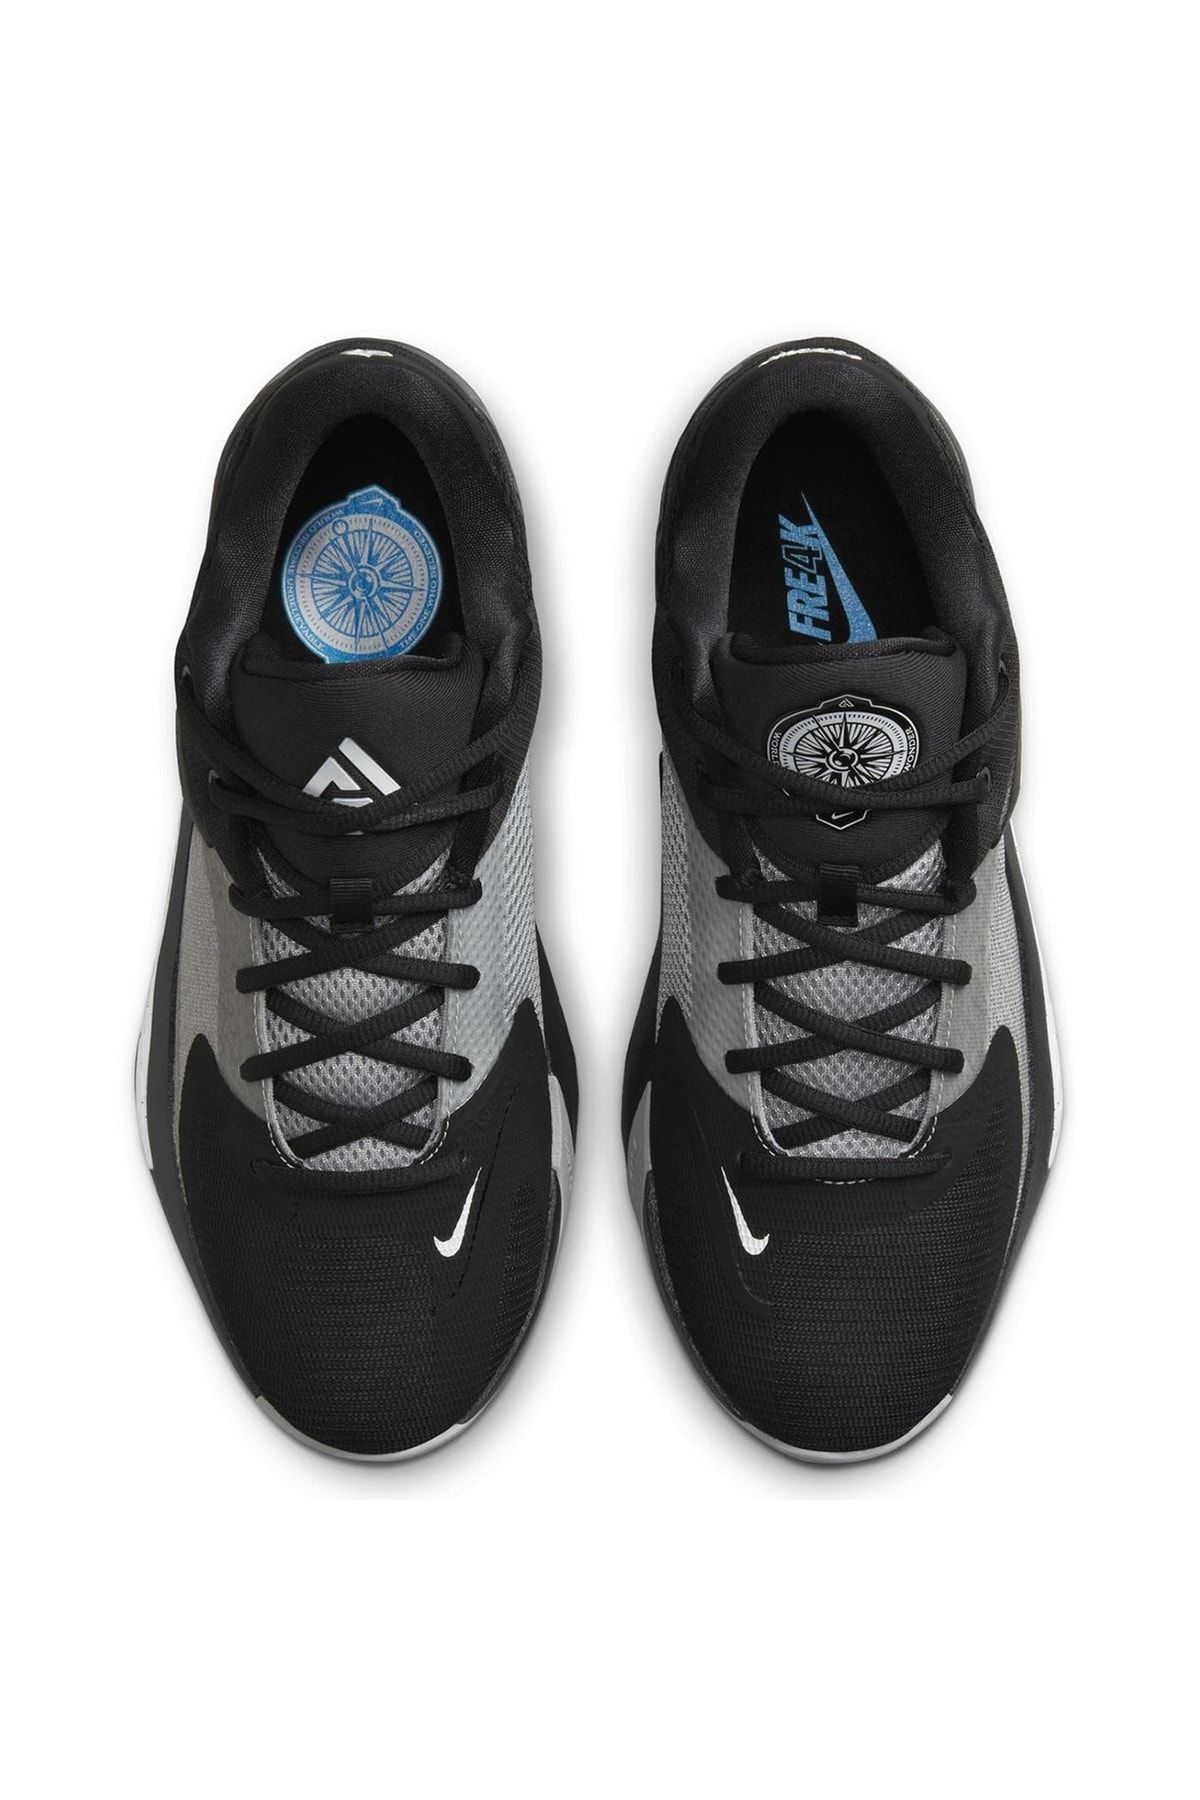 Nike Zoom Freak 4 Erkek Siyah Renk Basketbol Ayakkabısı